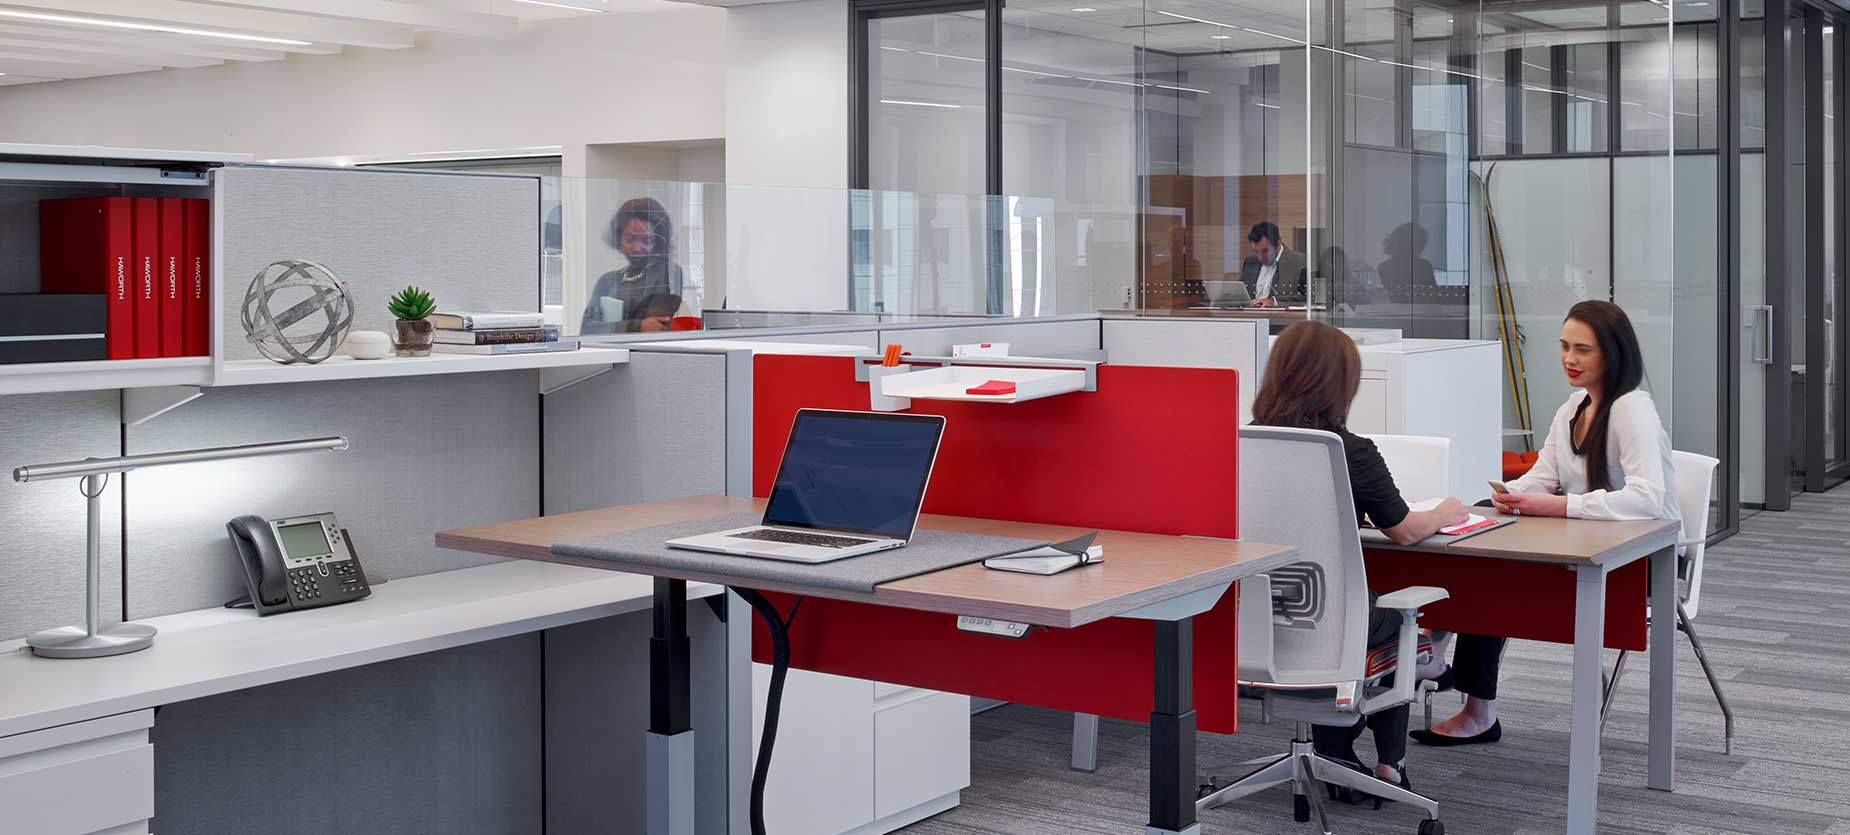 ショールームには高さ調節可能なテーブルを置き、オフィスにおける動きと柔軟性の重要性を強調しています。